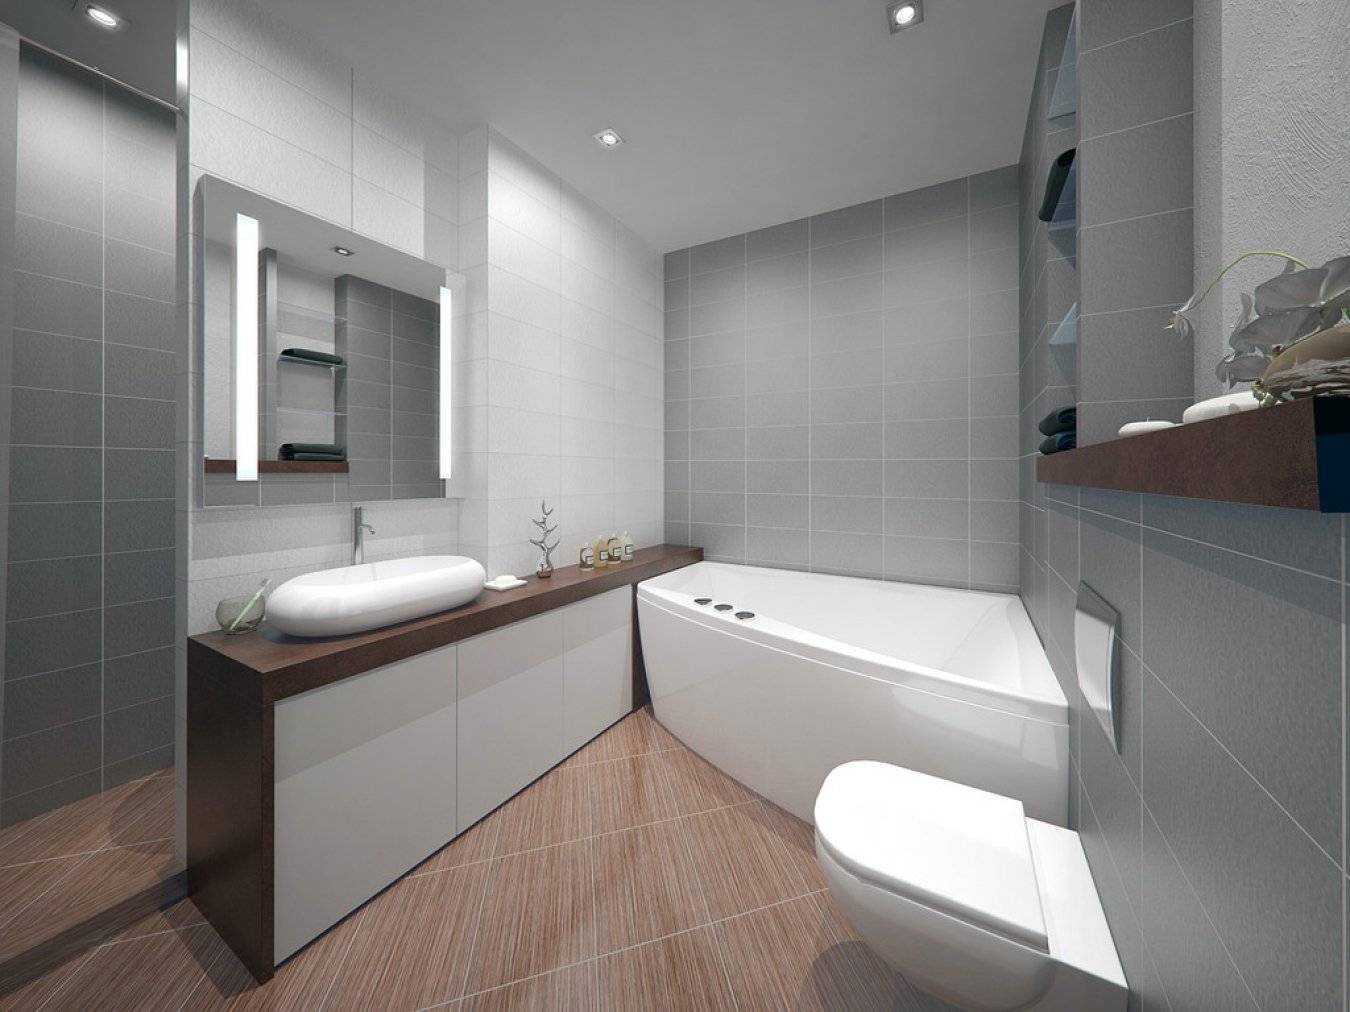 Ванная комната в стиле минимализм (90 фото): дизайн интерьера, идеи для ремонта - houser.su